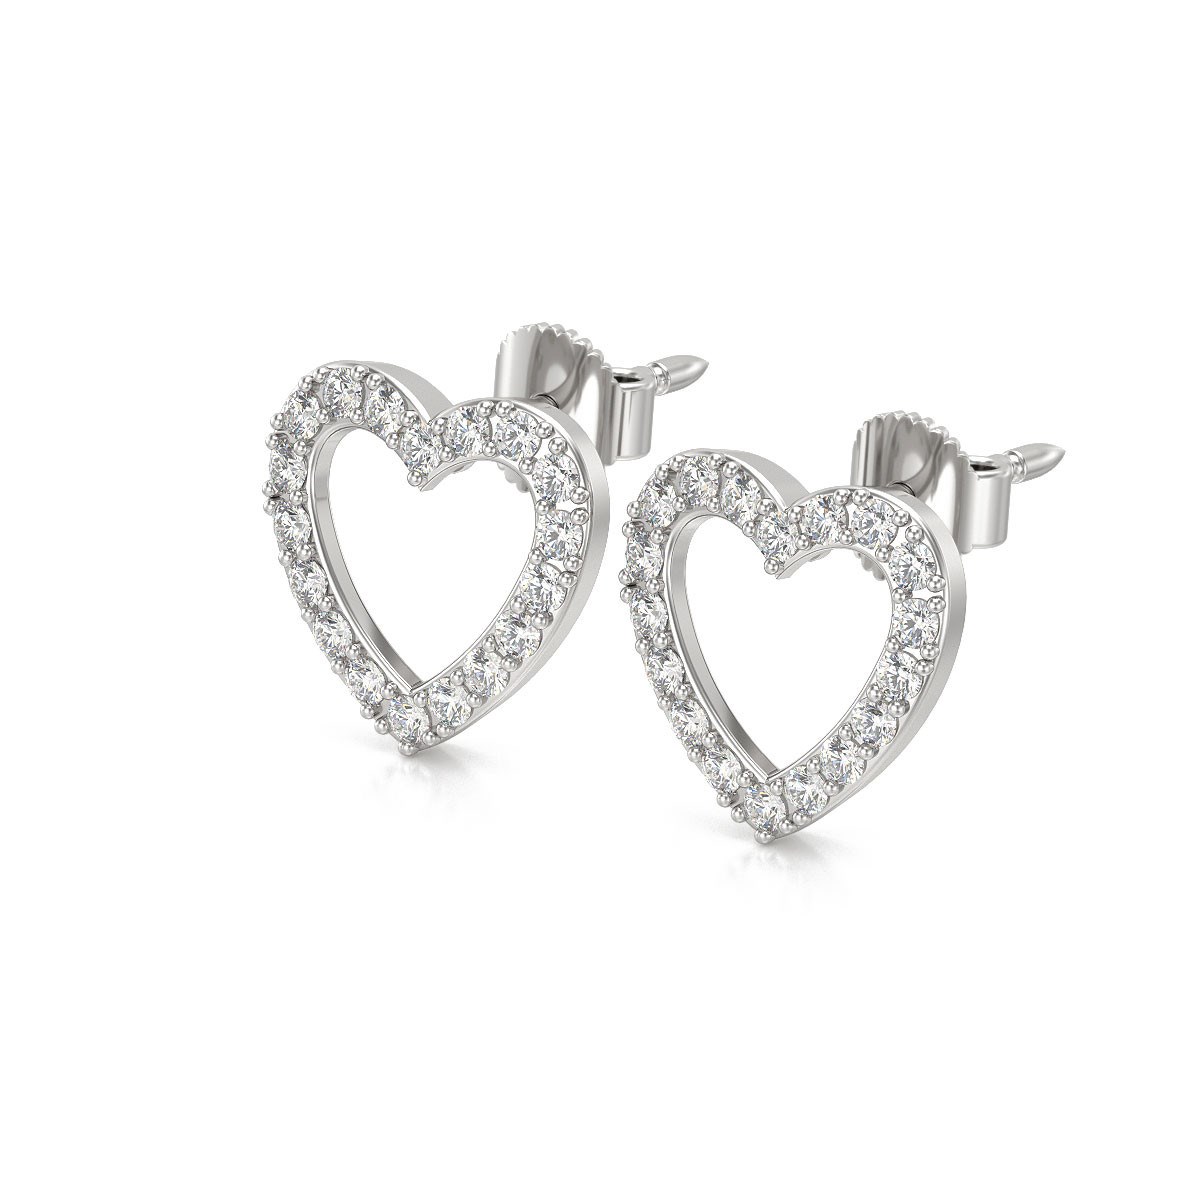 Boucles d'oreilles ADEN Coeur Diamants sur Argent 925 1.284grs - vue 3